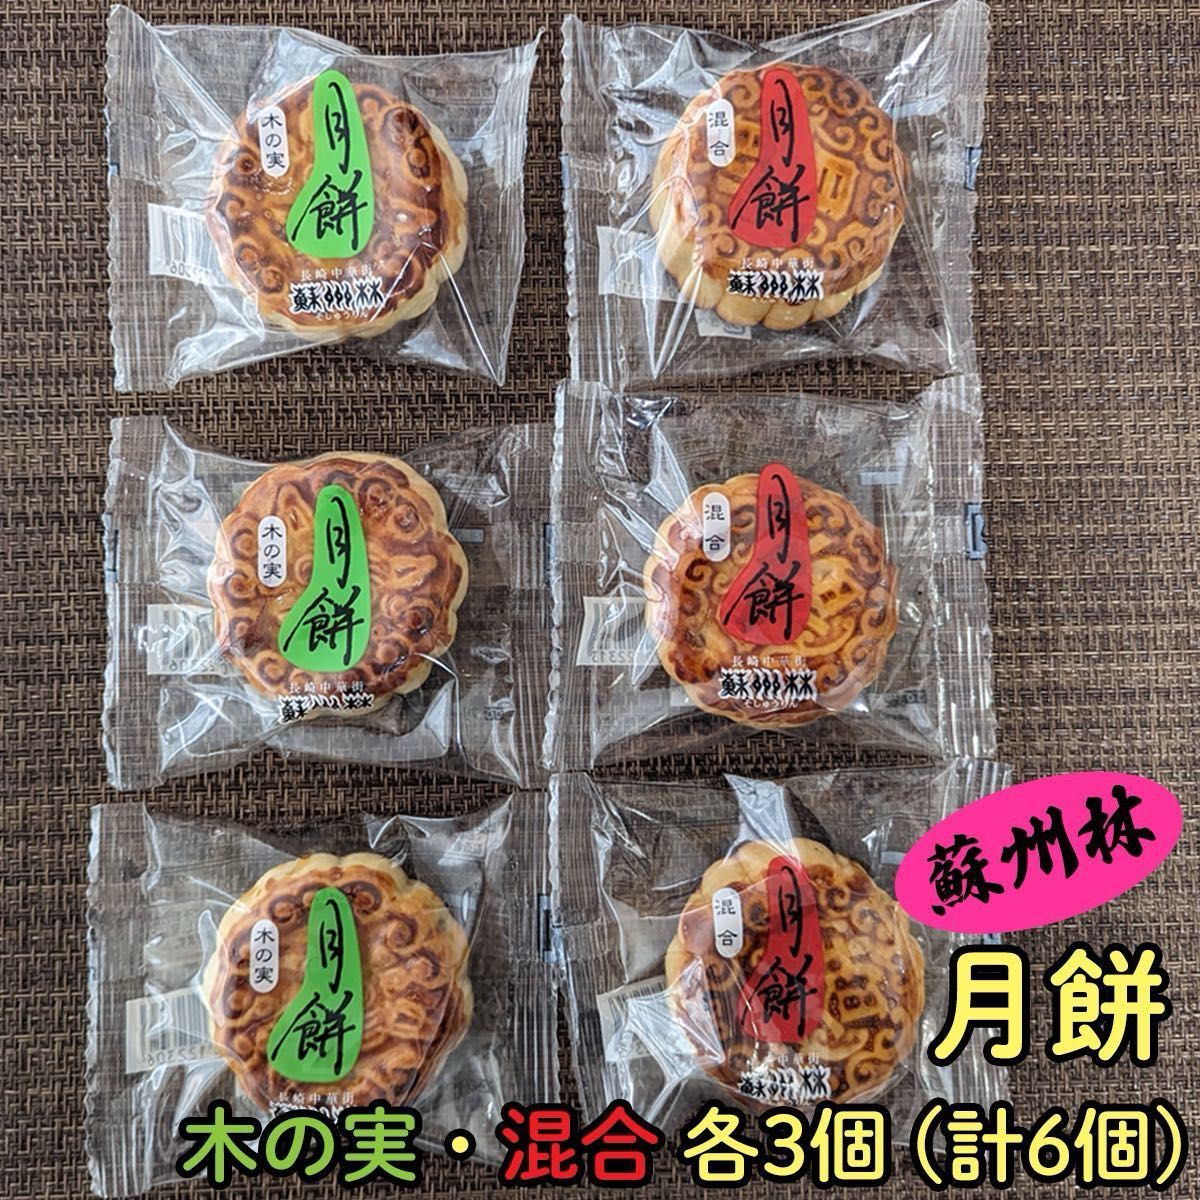 【賞味期限が近いためセール】蘇州林 小月餅 2種類 食べくらべ セット 6個入り